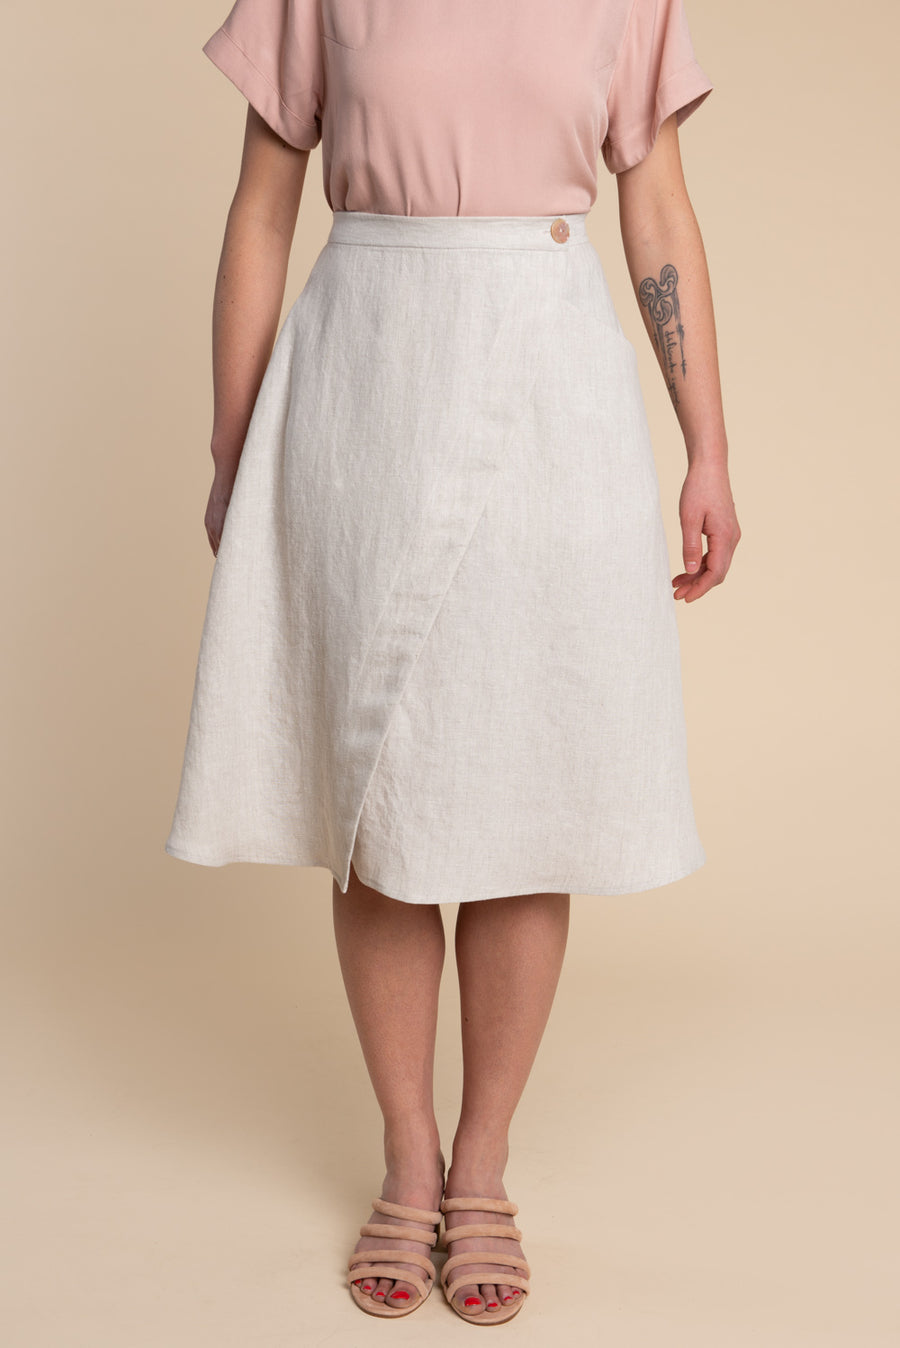 Fiore Skirt Pattern / Wrap Skirt, Button Front + A-Line Skirt Pattern ...